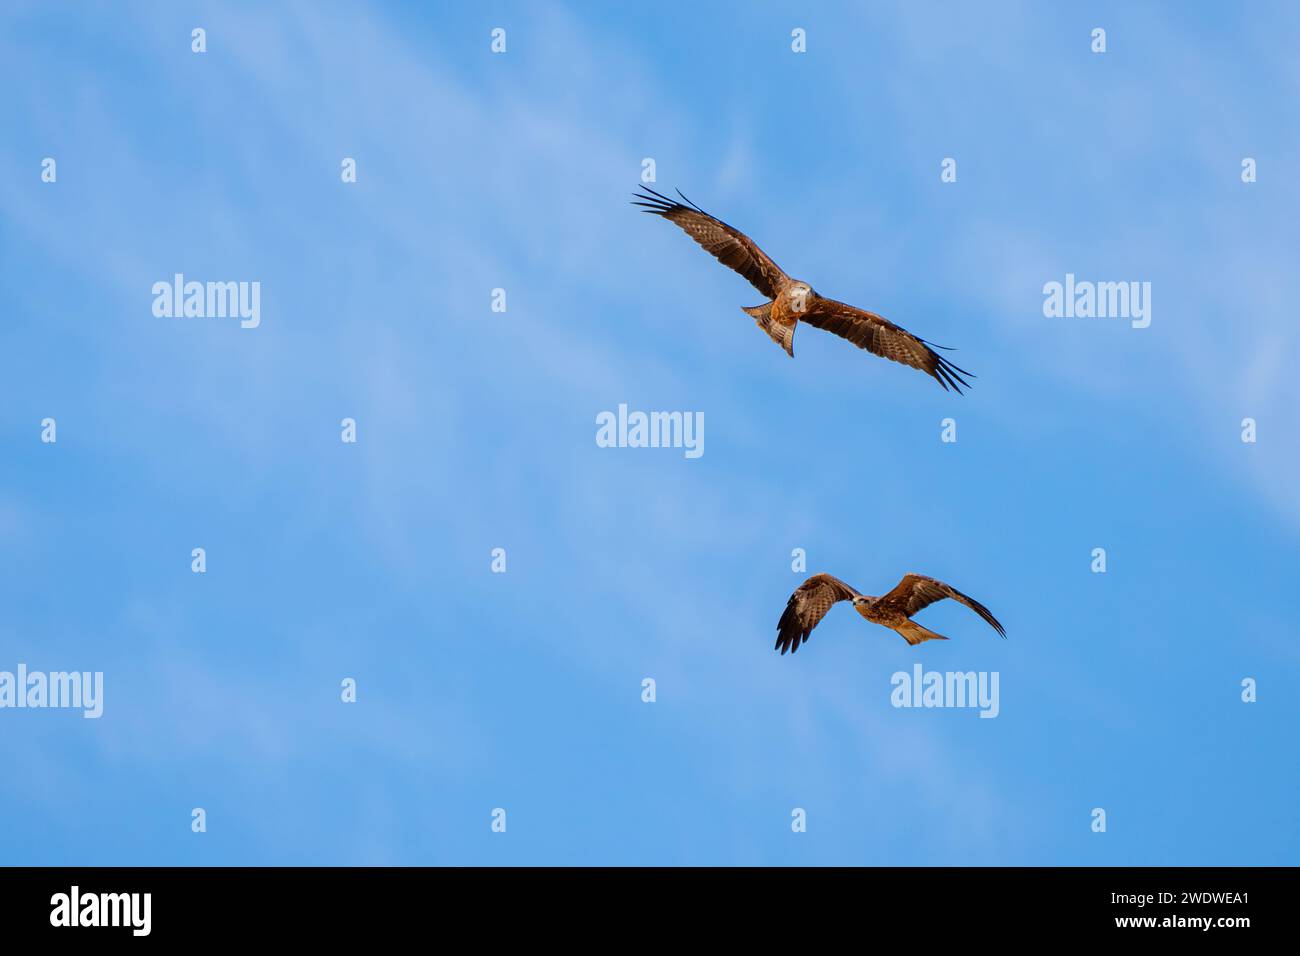 Cerf-volant noir (Milvus migrans) en vol avec un fond de ciel bleu photographié en Israël en décembre le cerf-volant noir (Milvus migrans) est un cerf-volant de taille moyenne Banque D'Images